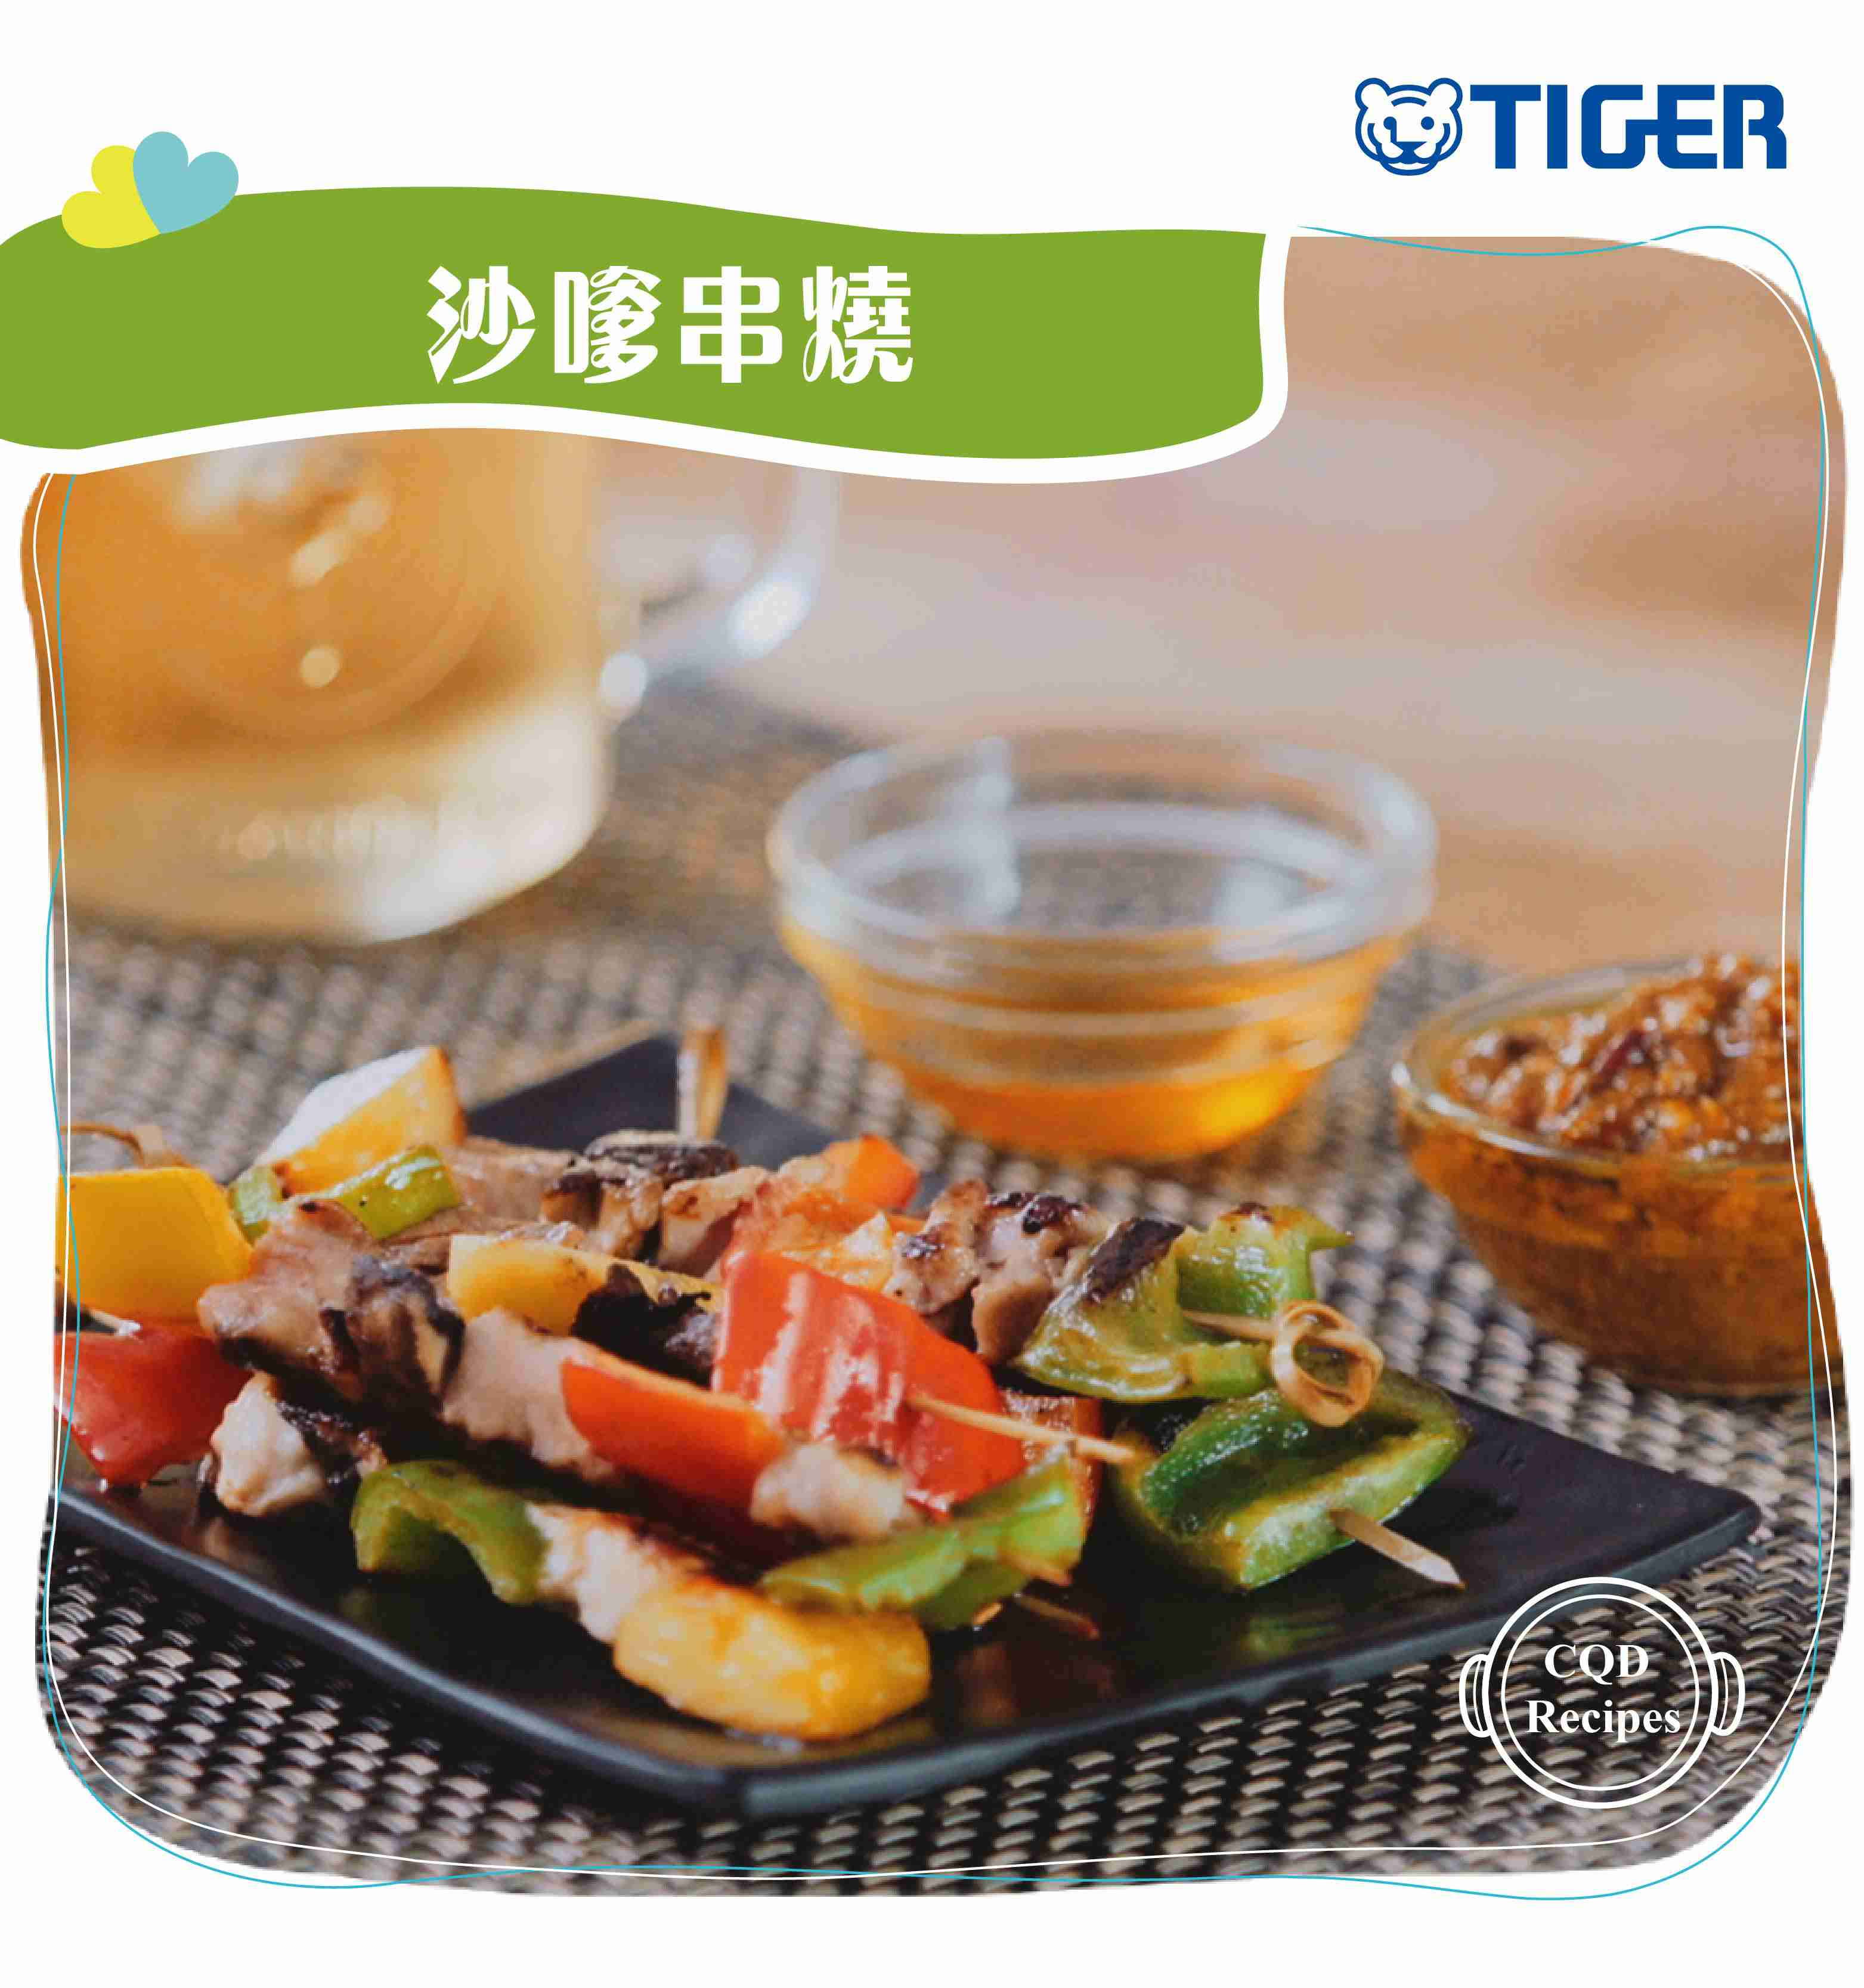 tiger-recipe-chicken-pork-beef-satay-1.jpg (307 KB)